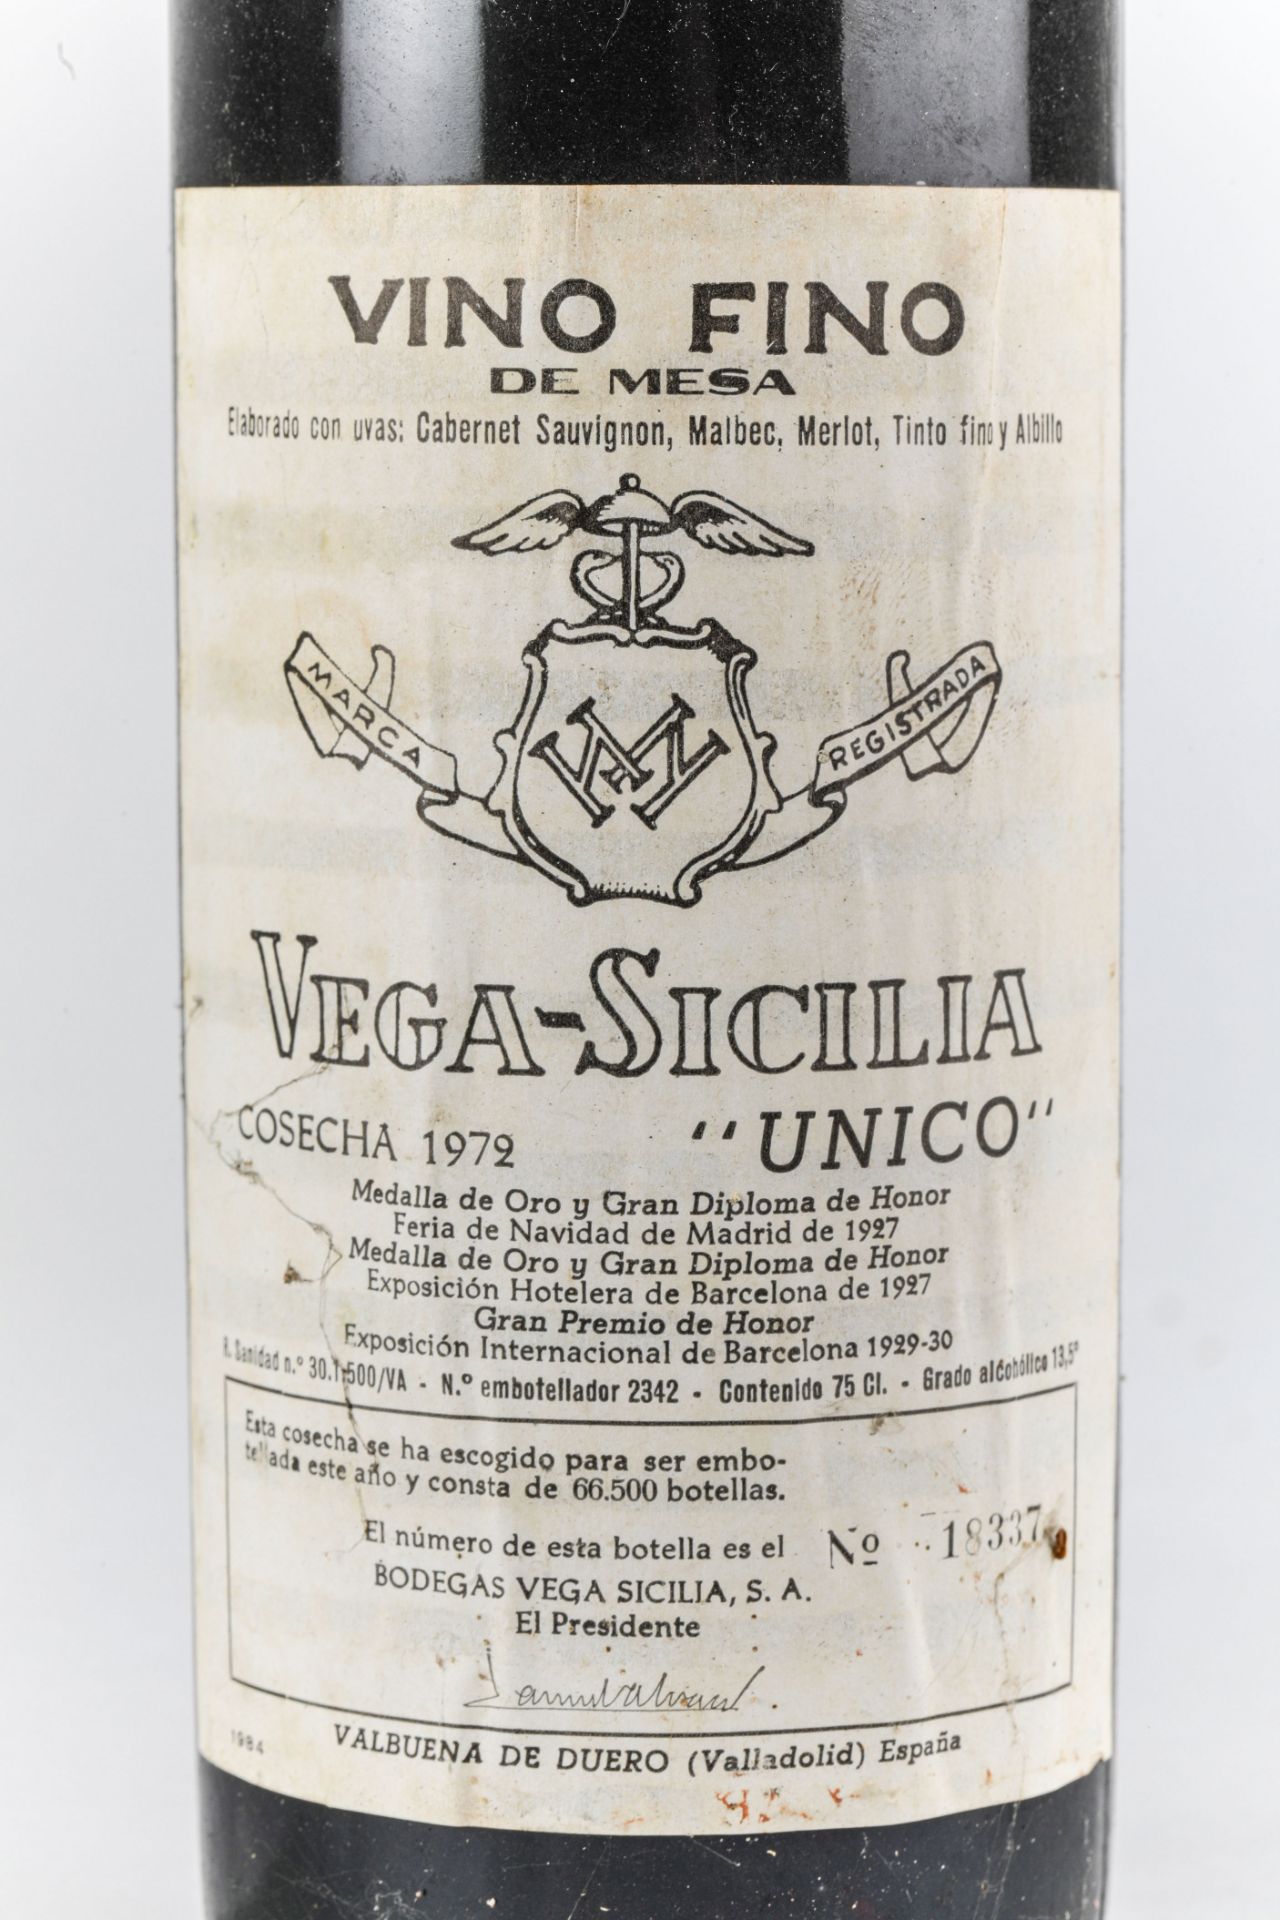 VEGA SICILIA UNICO. 1972. Ribera del Duero. Bouteille N°18337 sur production de 66 500 bouteilles. - Image 3 of 4